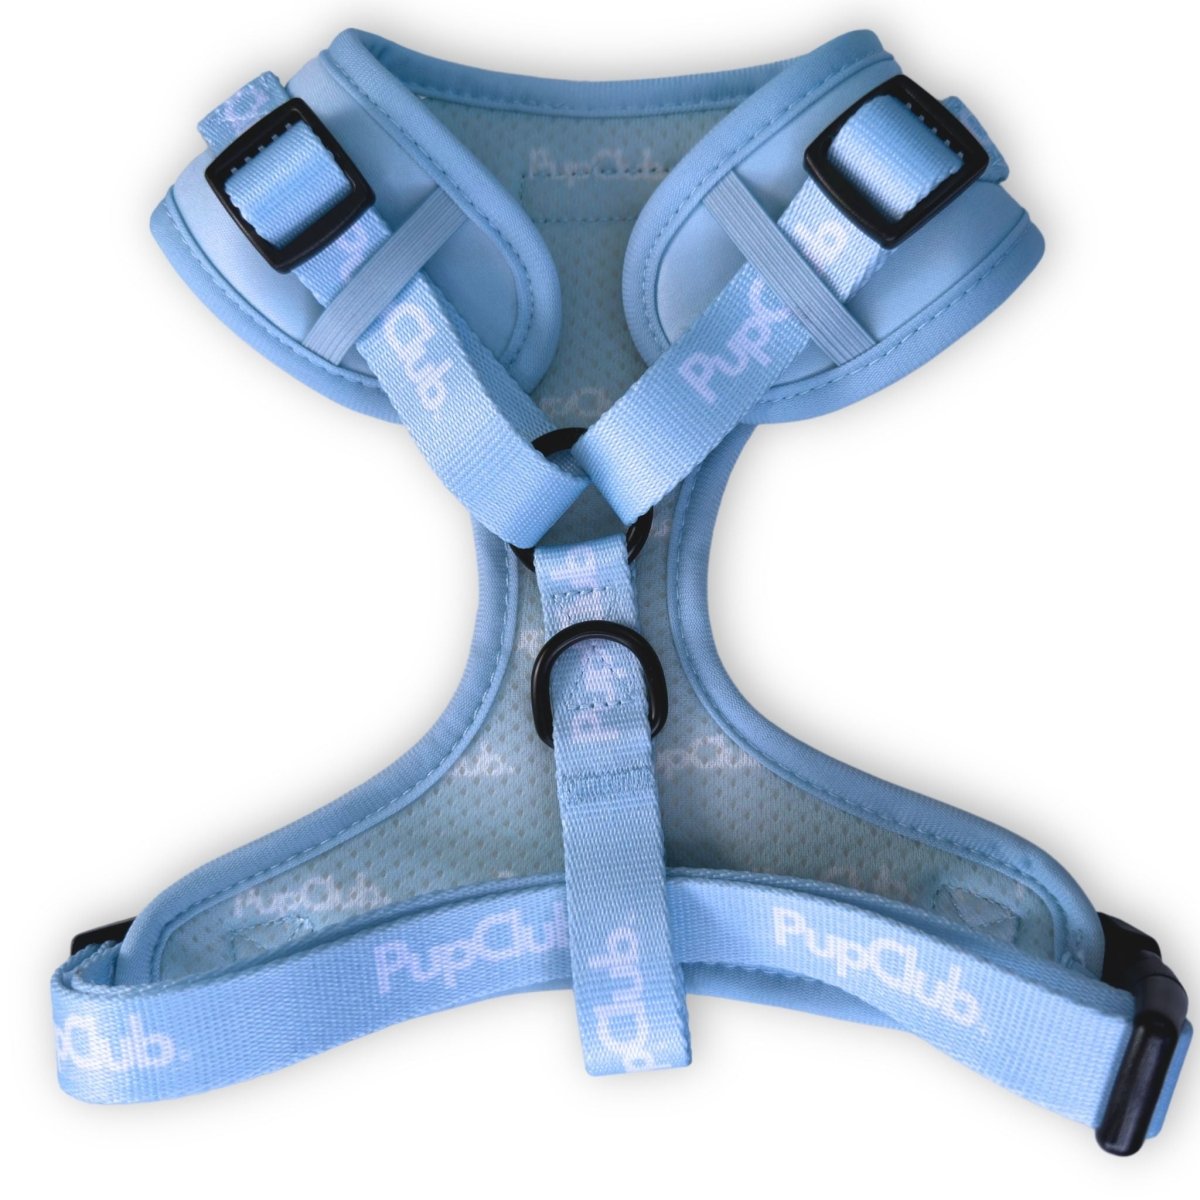 Pastel Blue adjustable dog harness - back